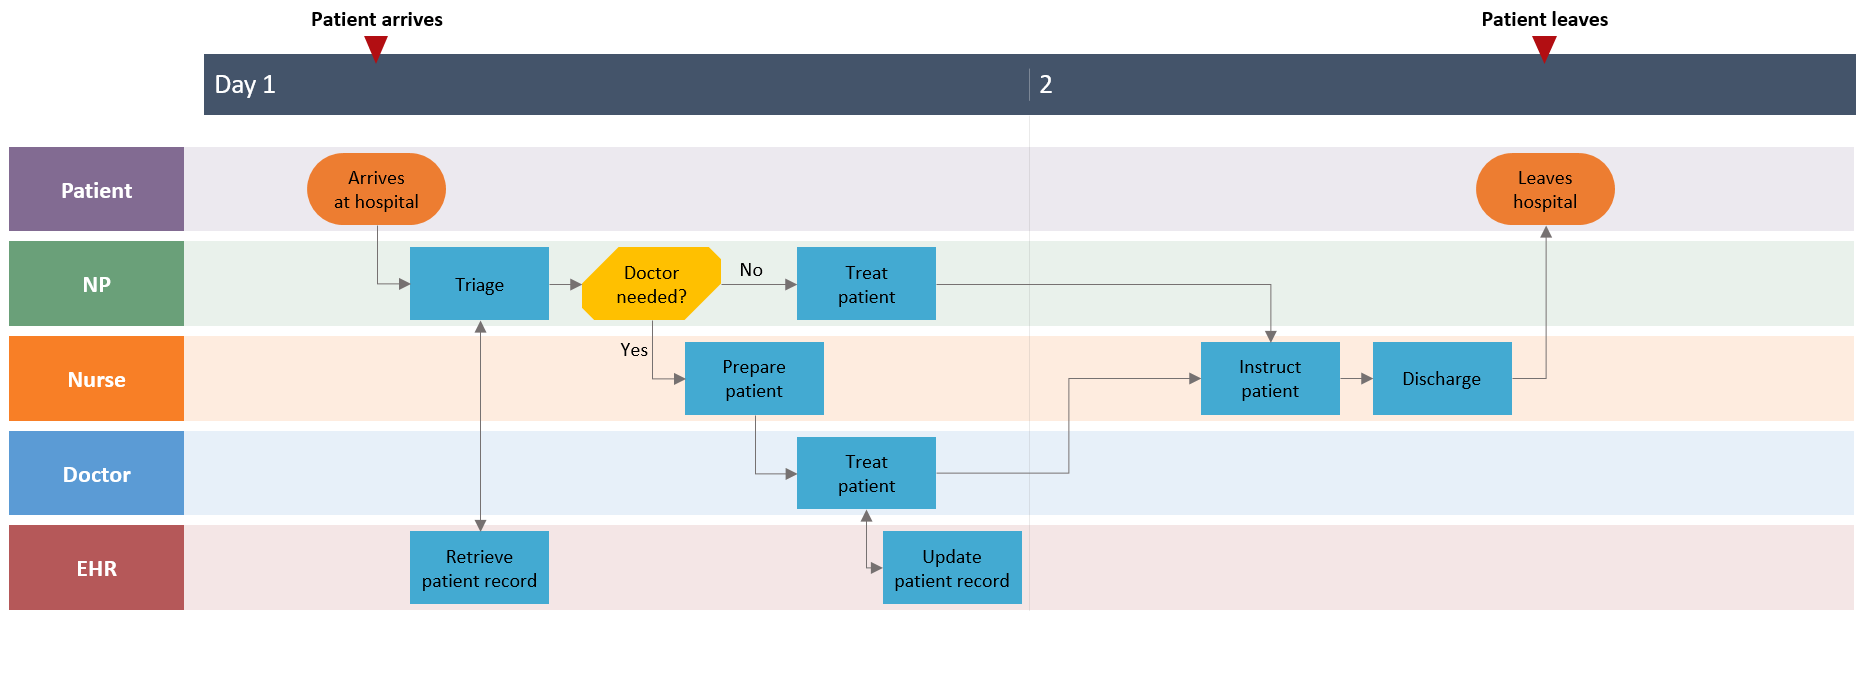 How to make swimlane diagrams in Word + Free swimlane diagram templates